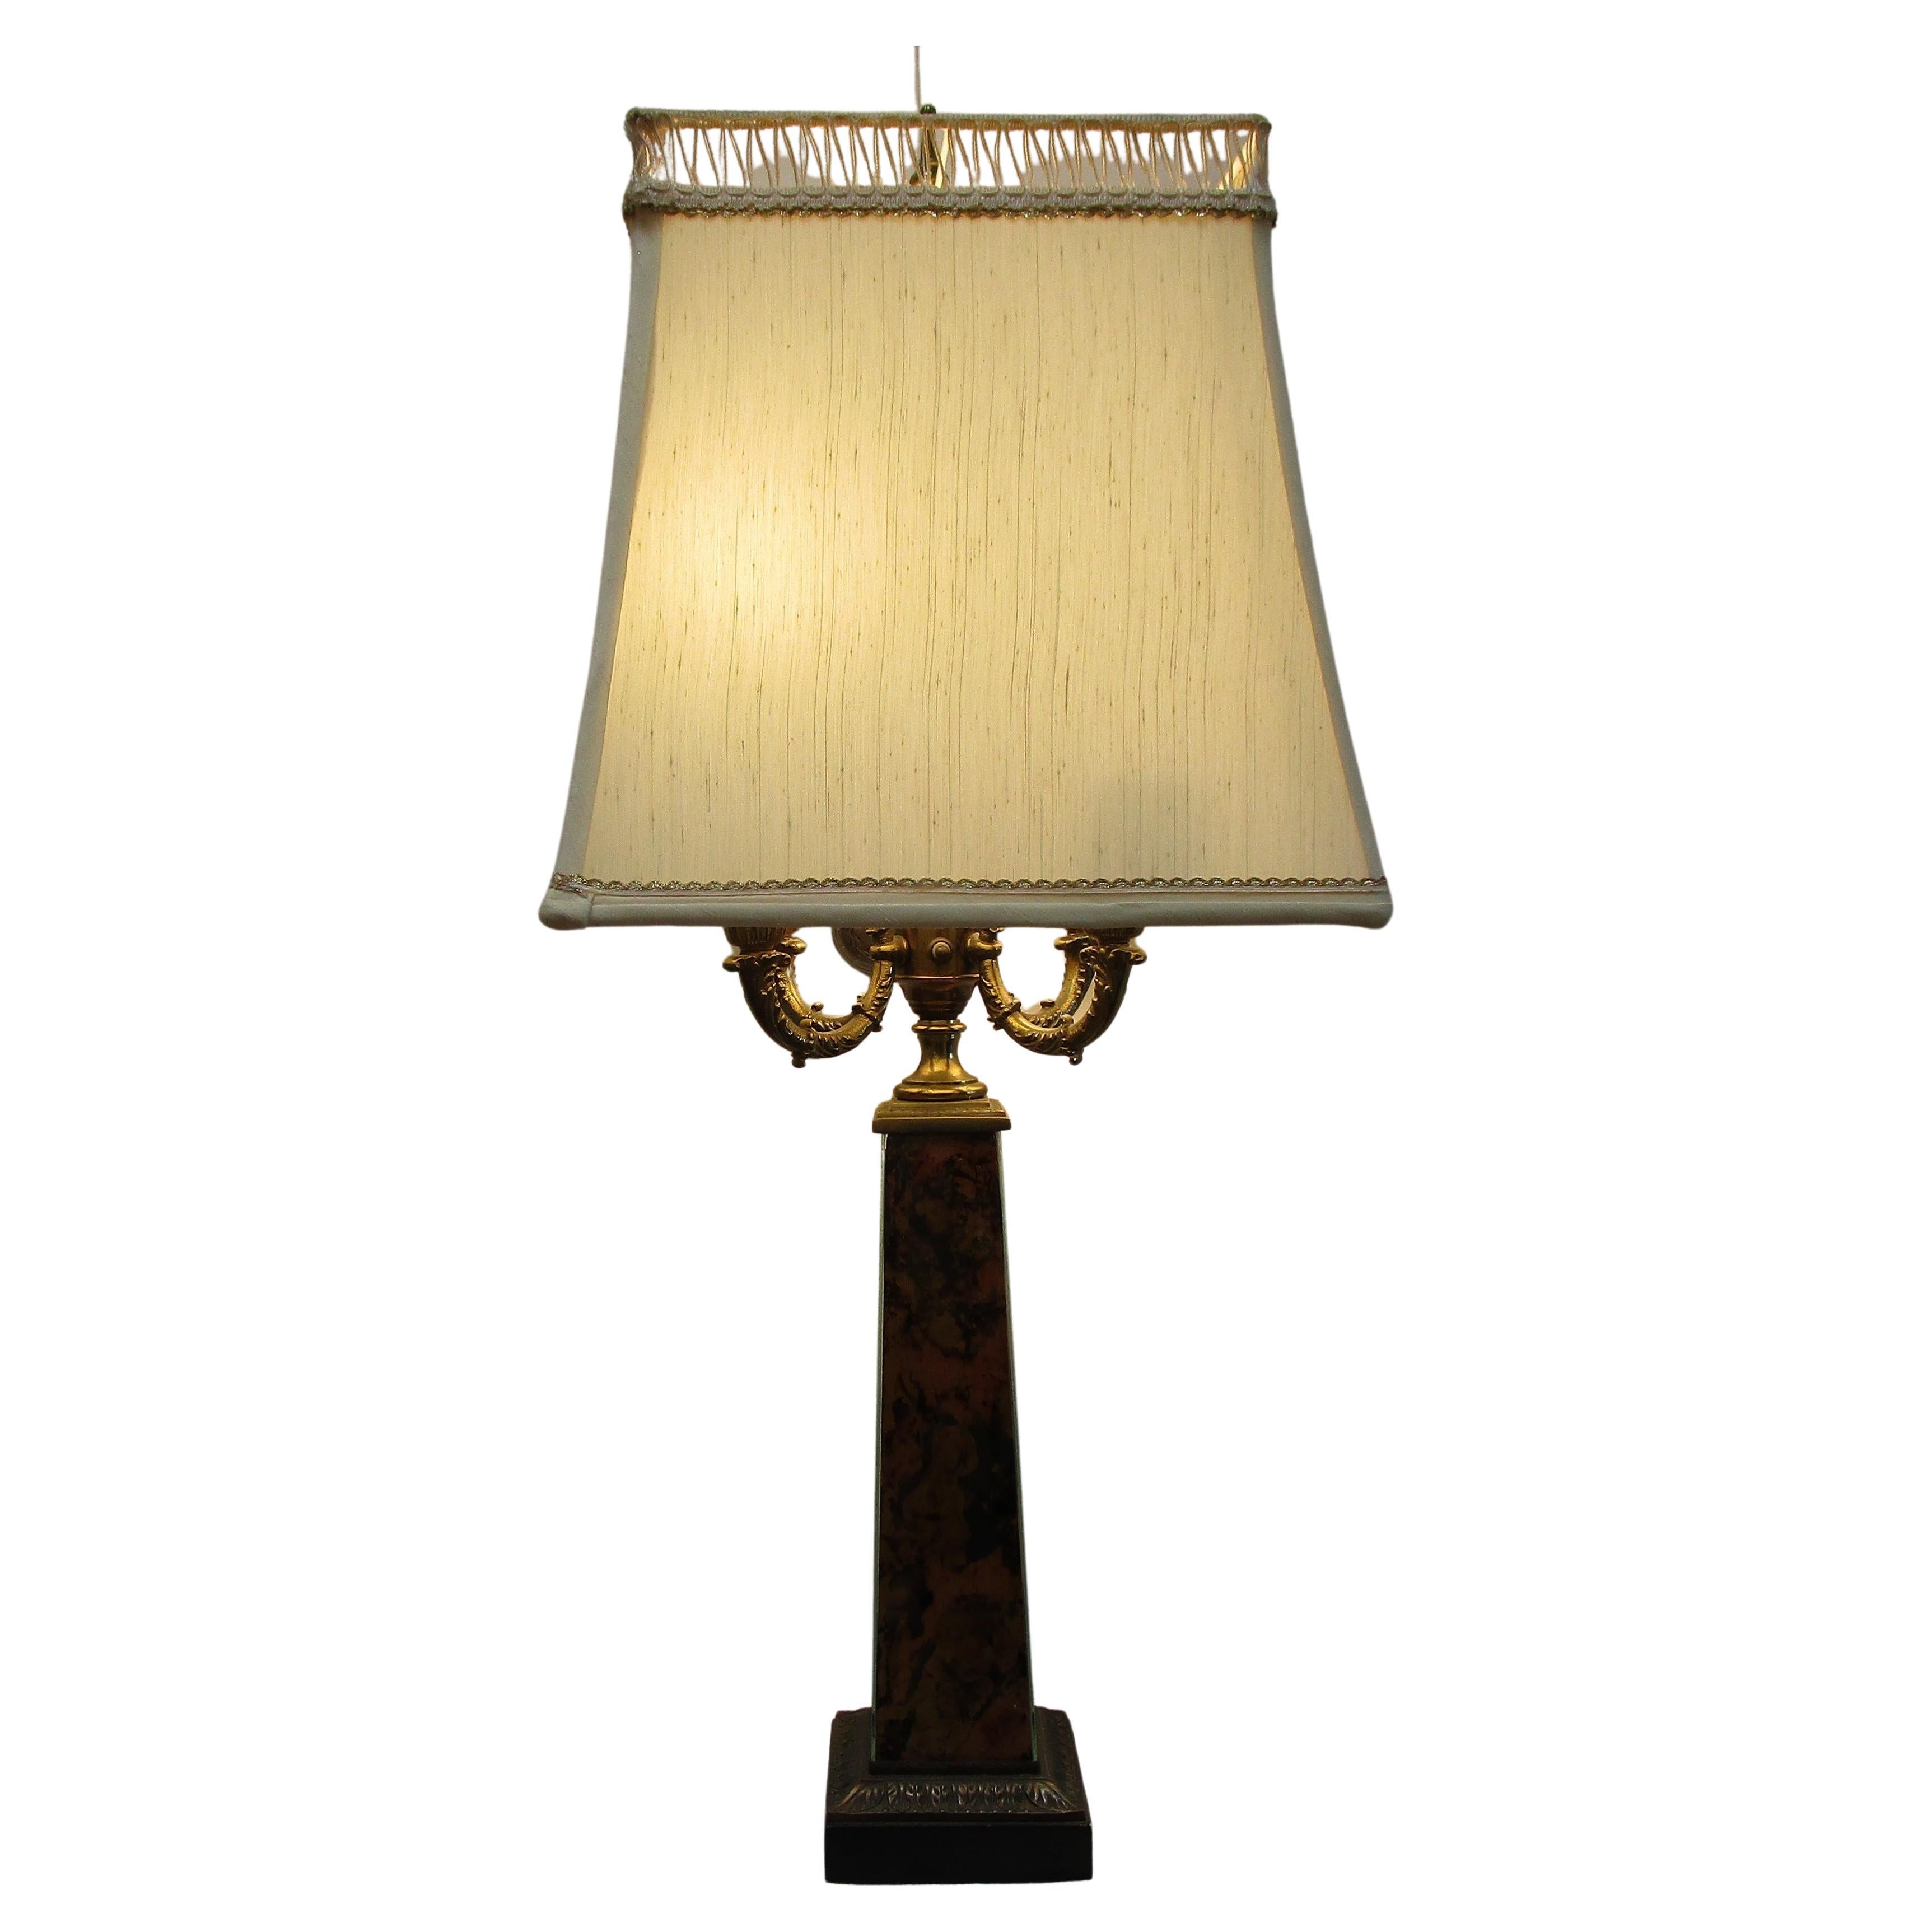 Lampe de table victorienne du 19ème siècle avec abat-jour spécial